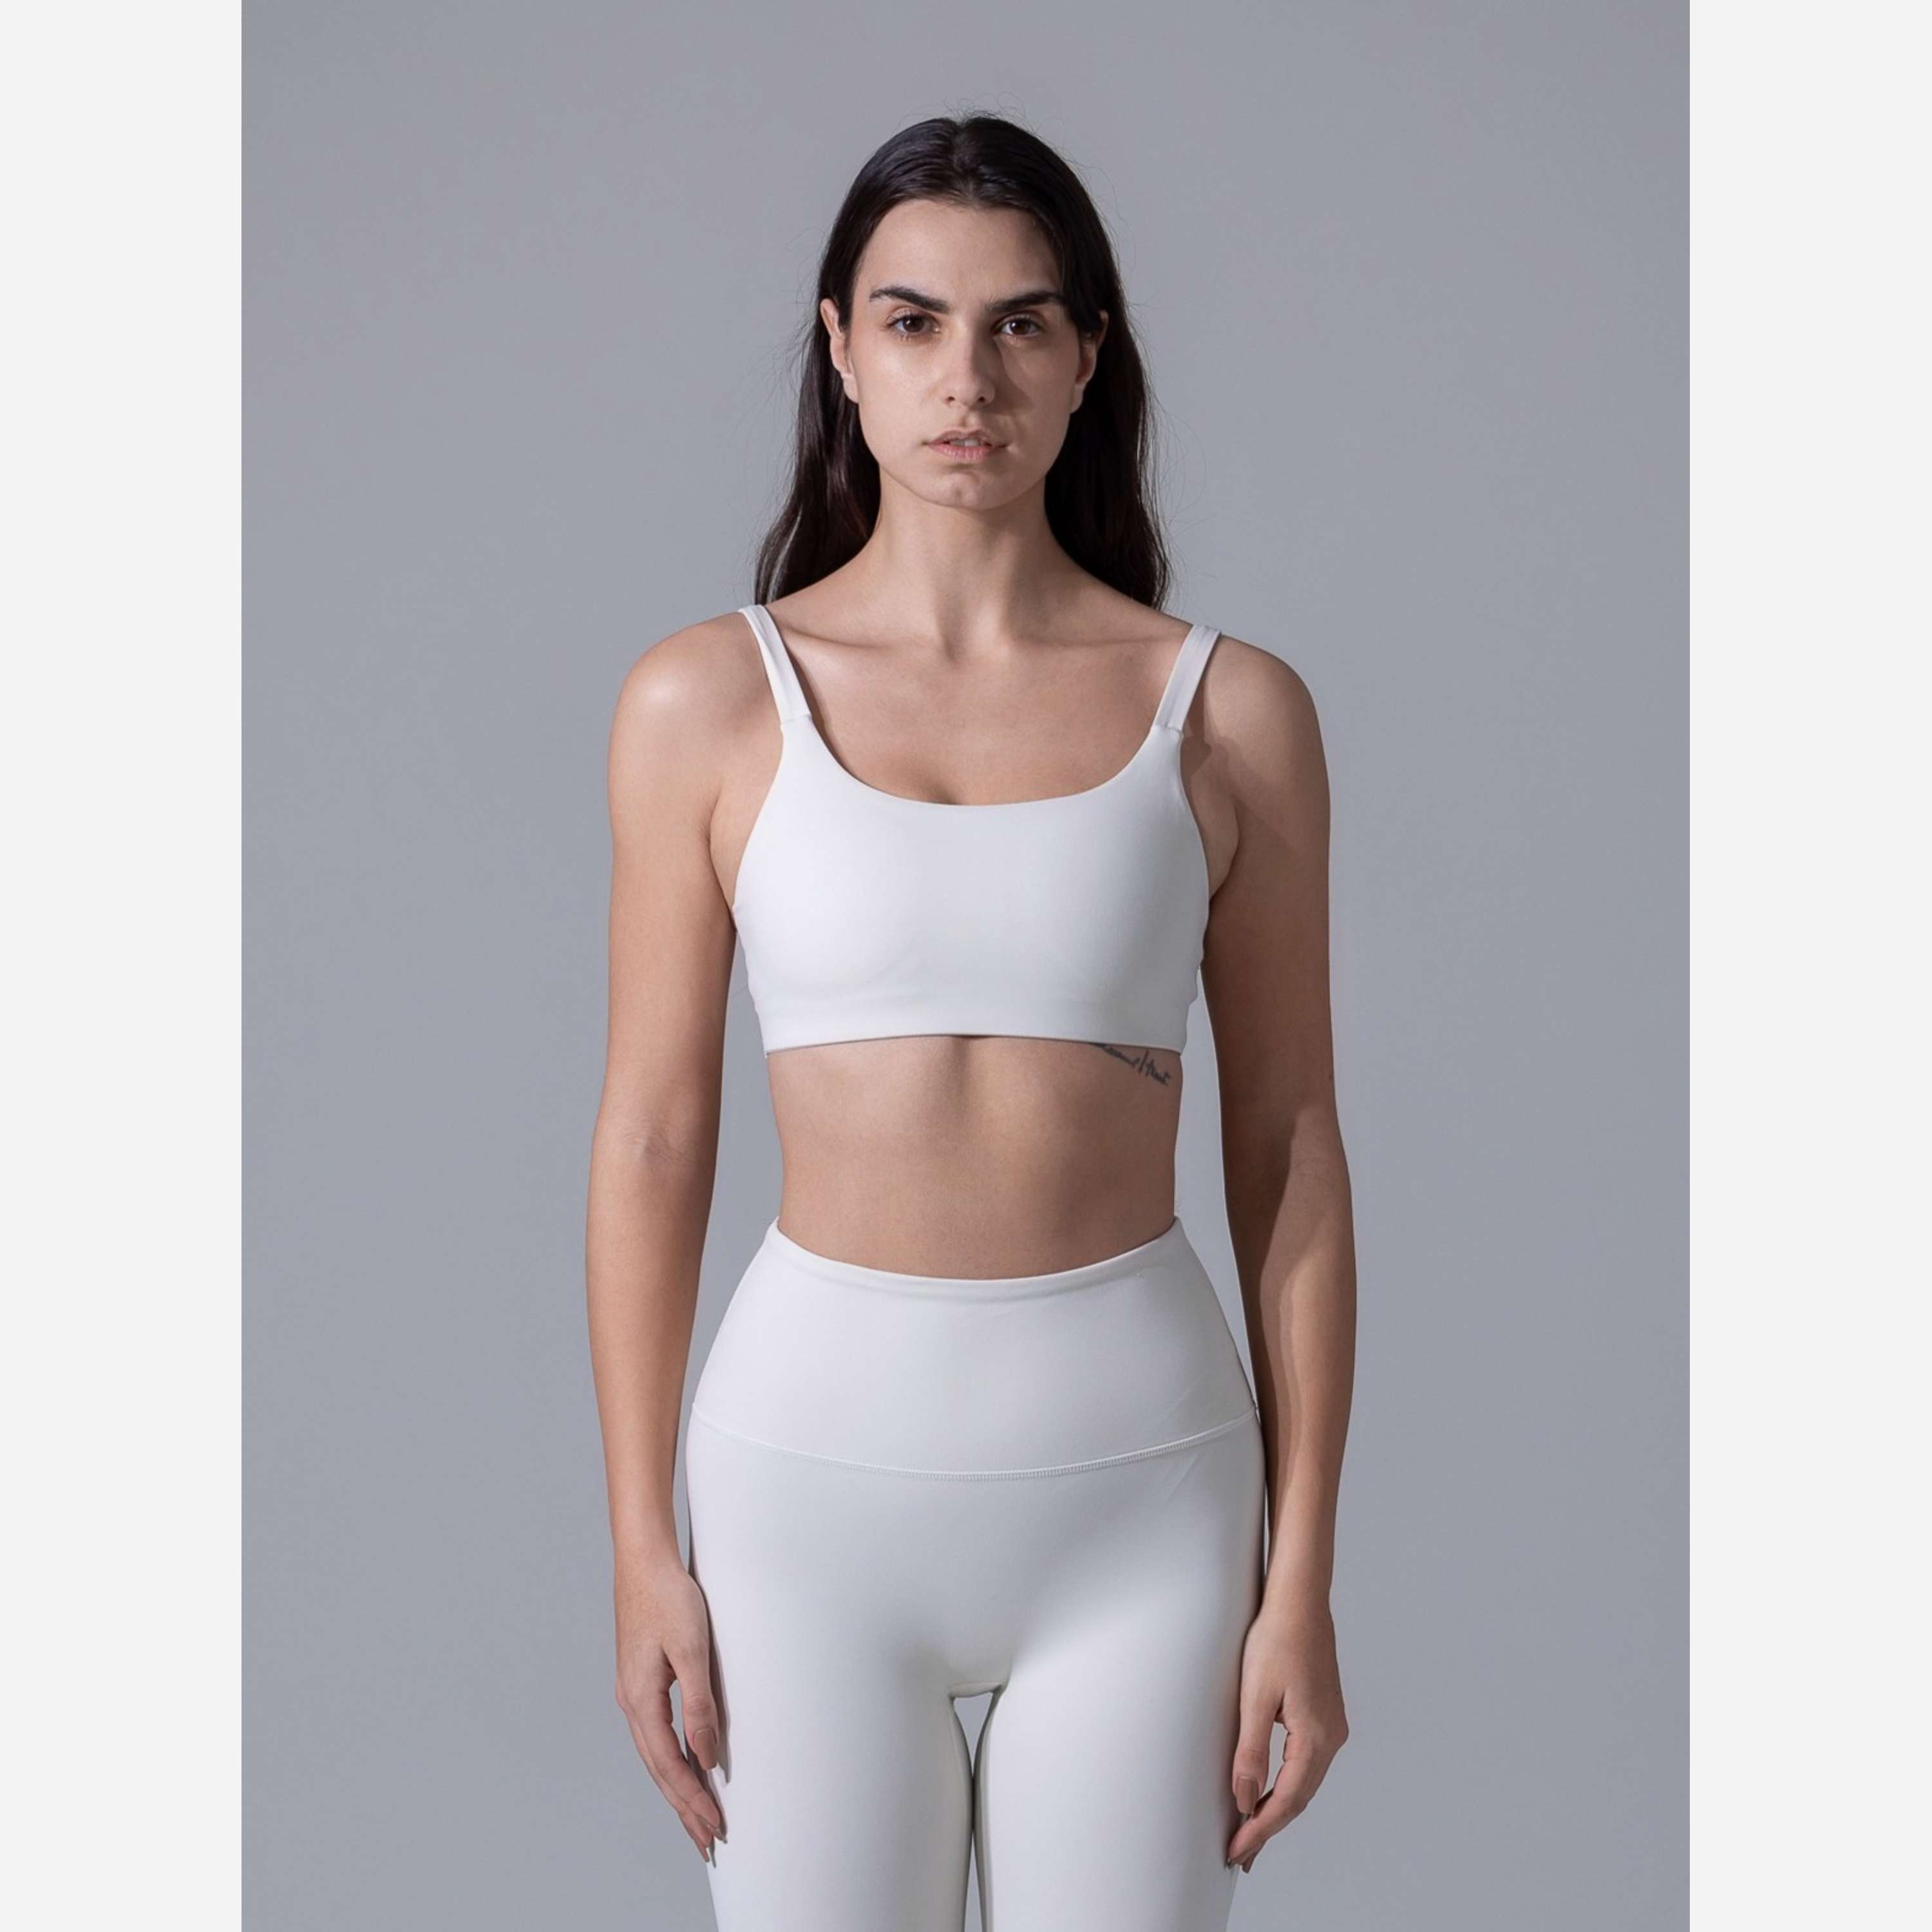 Cream Yoga - Nora double-strap bra top white